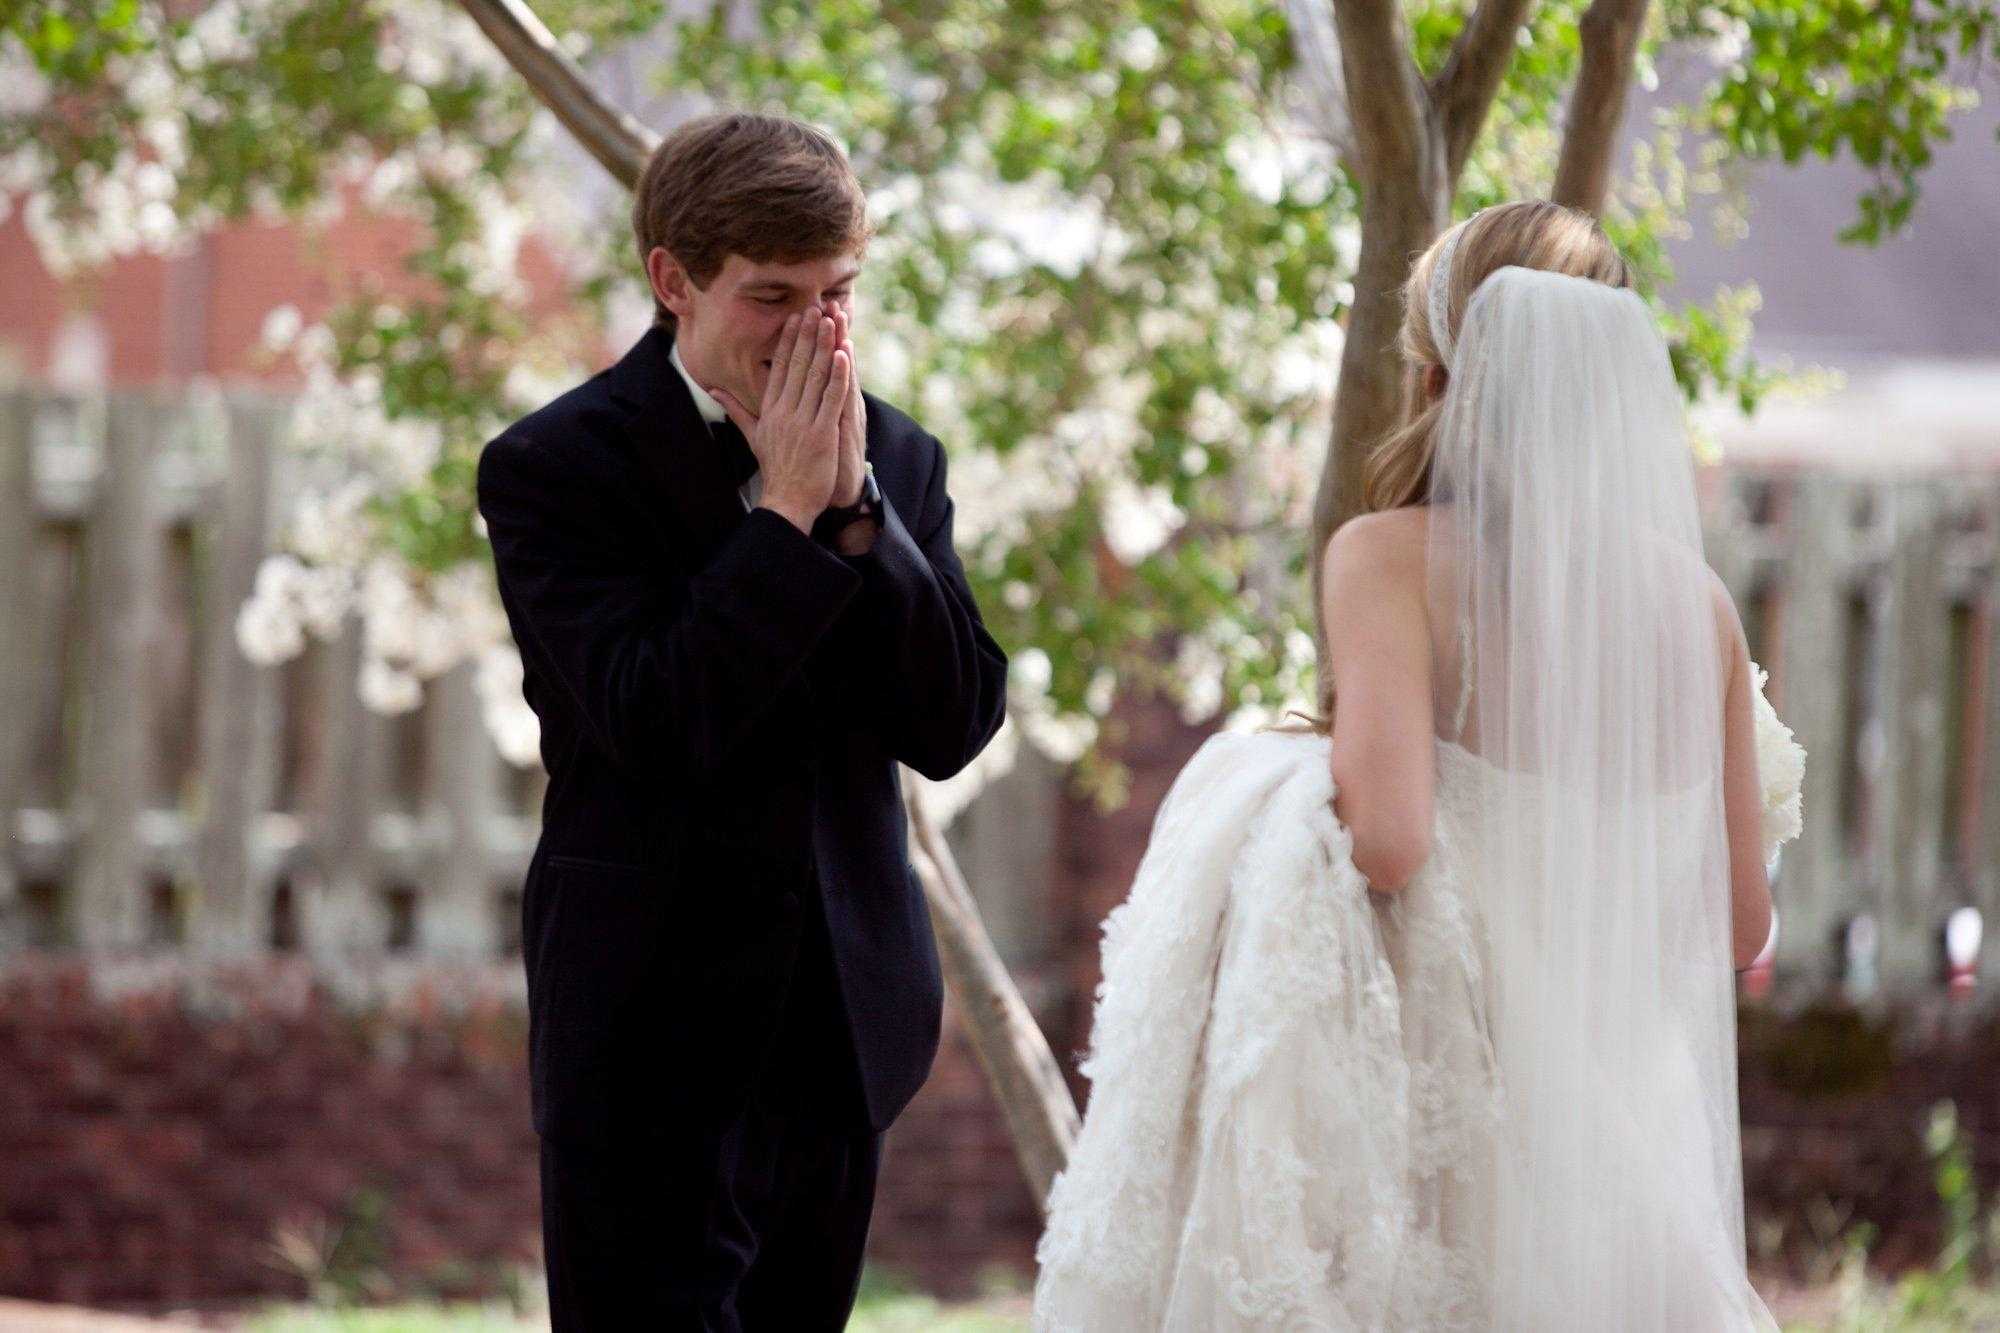 Потом свадьба будет. Невеста. Невесты в свадебных платьях. Невеста плачет на свадьбе. Жених.